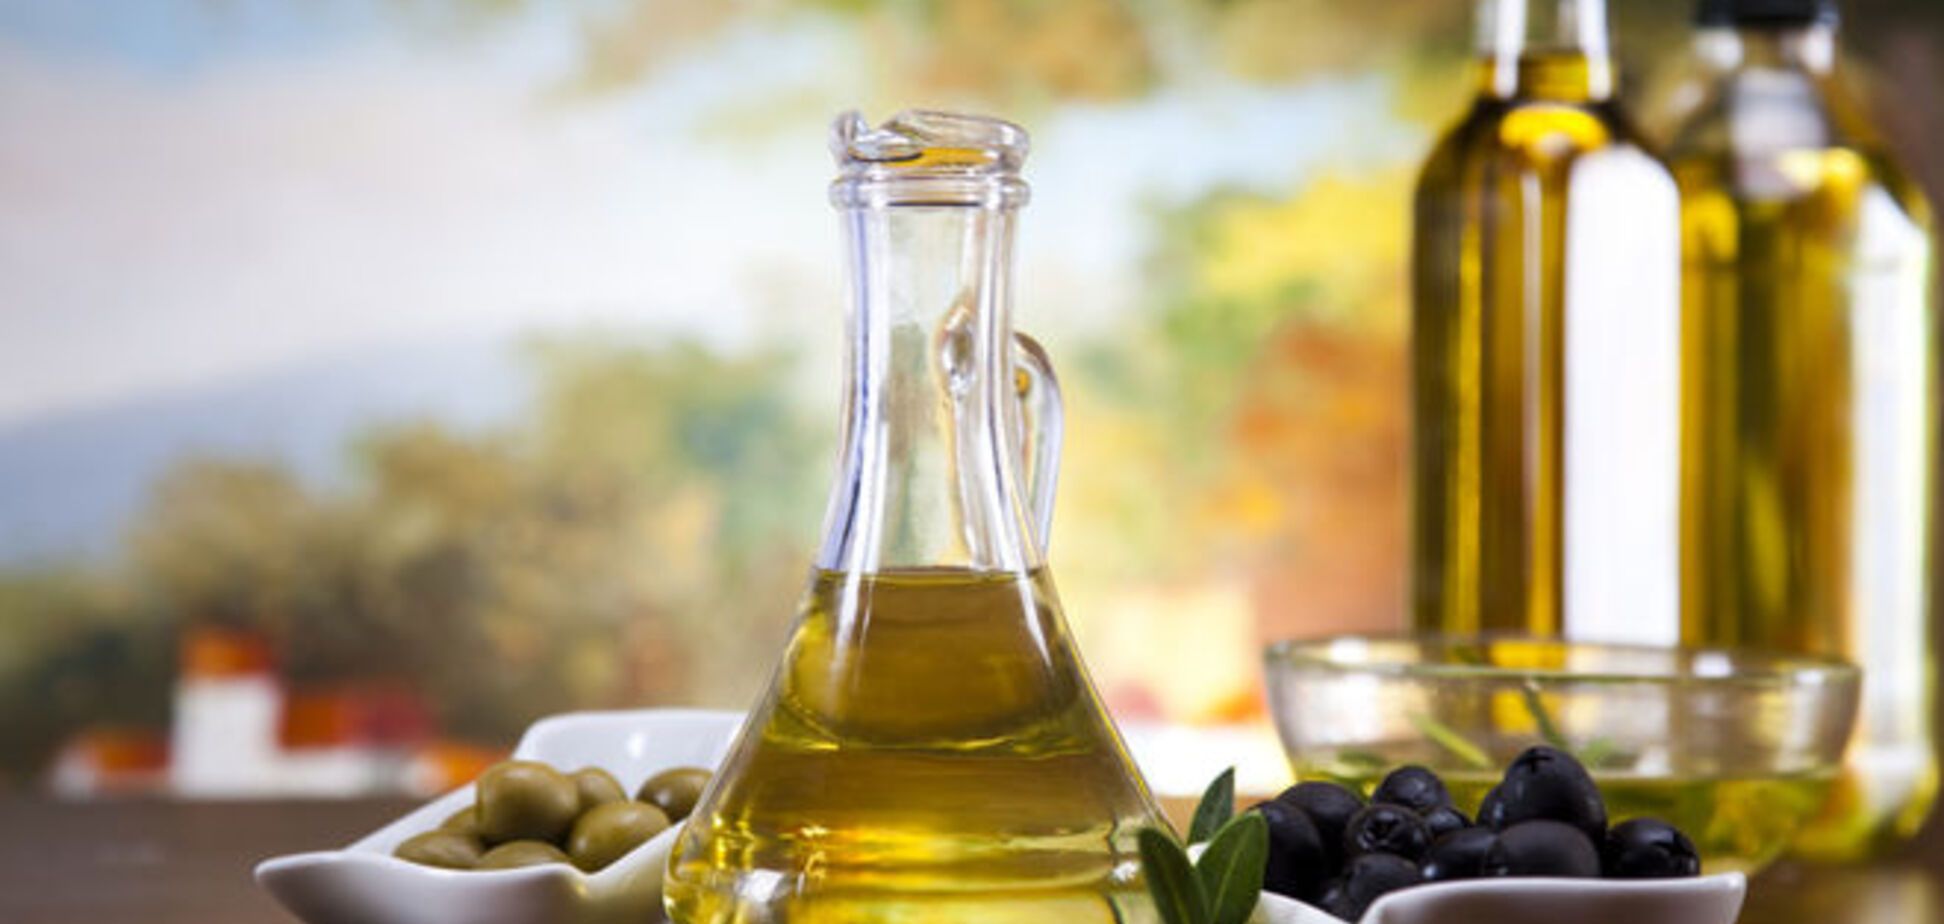 Топ-5 секретов магазинных продуктов: обман с оливковым маслом и белковый сыр